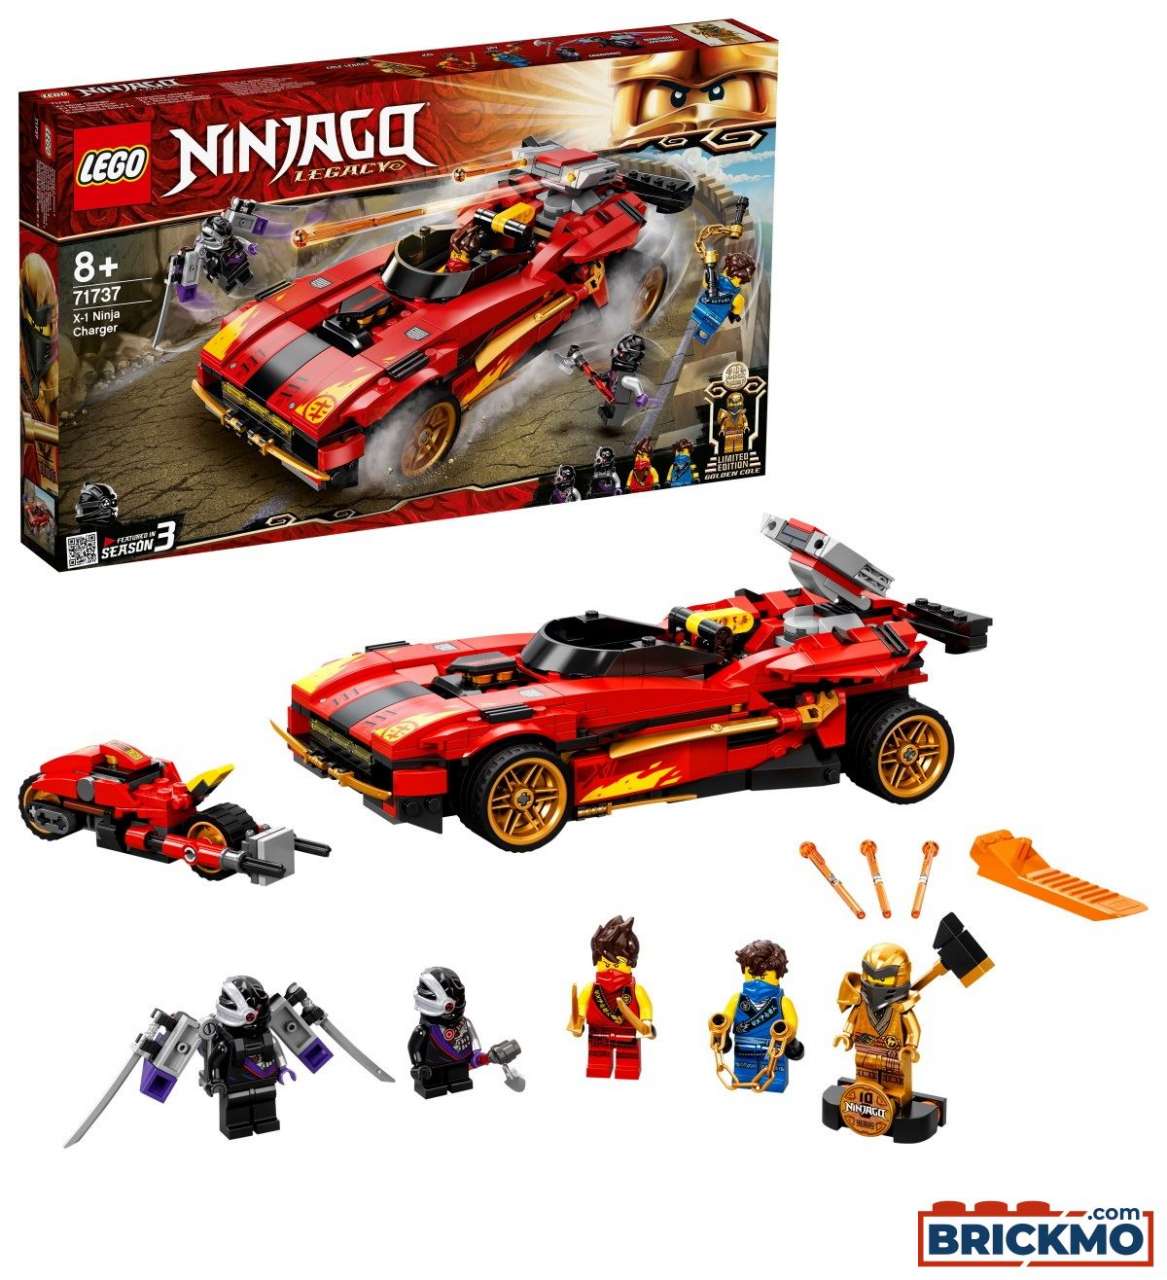 LEGO Ninjago 71737 X-1 Ninja Supercar 71737